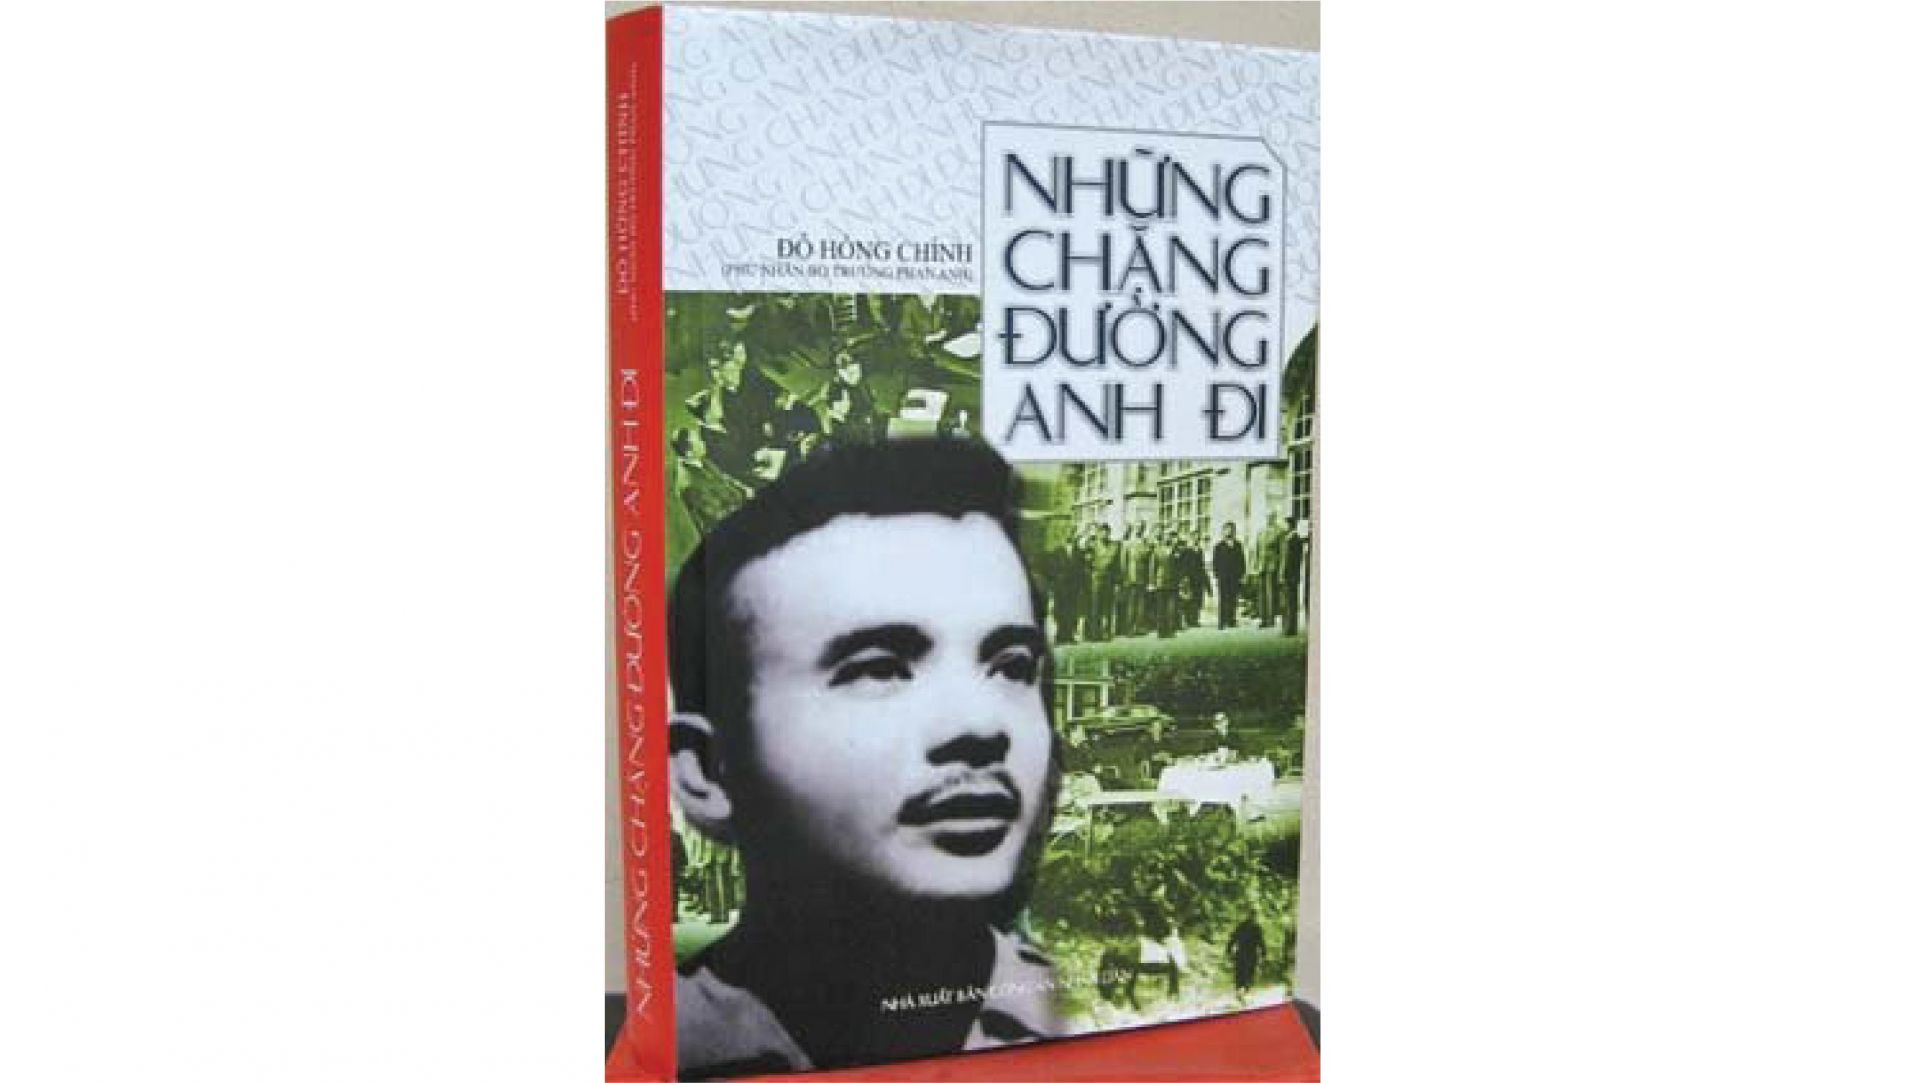 Cuốn sách: “Những chặng đường anh đi”, tác giả Đỗ Hồng Chỉnh - Phu nhân cố Bộ trưởng Phan Anh, Nhà xuất bản Công an Nhân dân, 2011